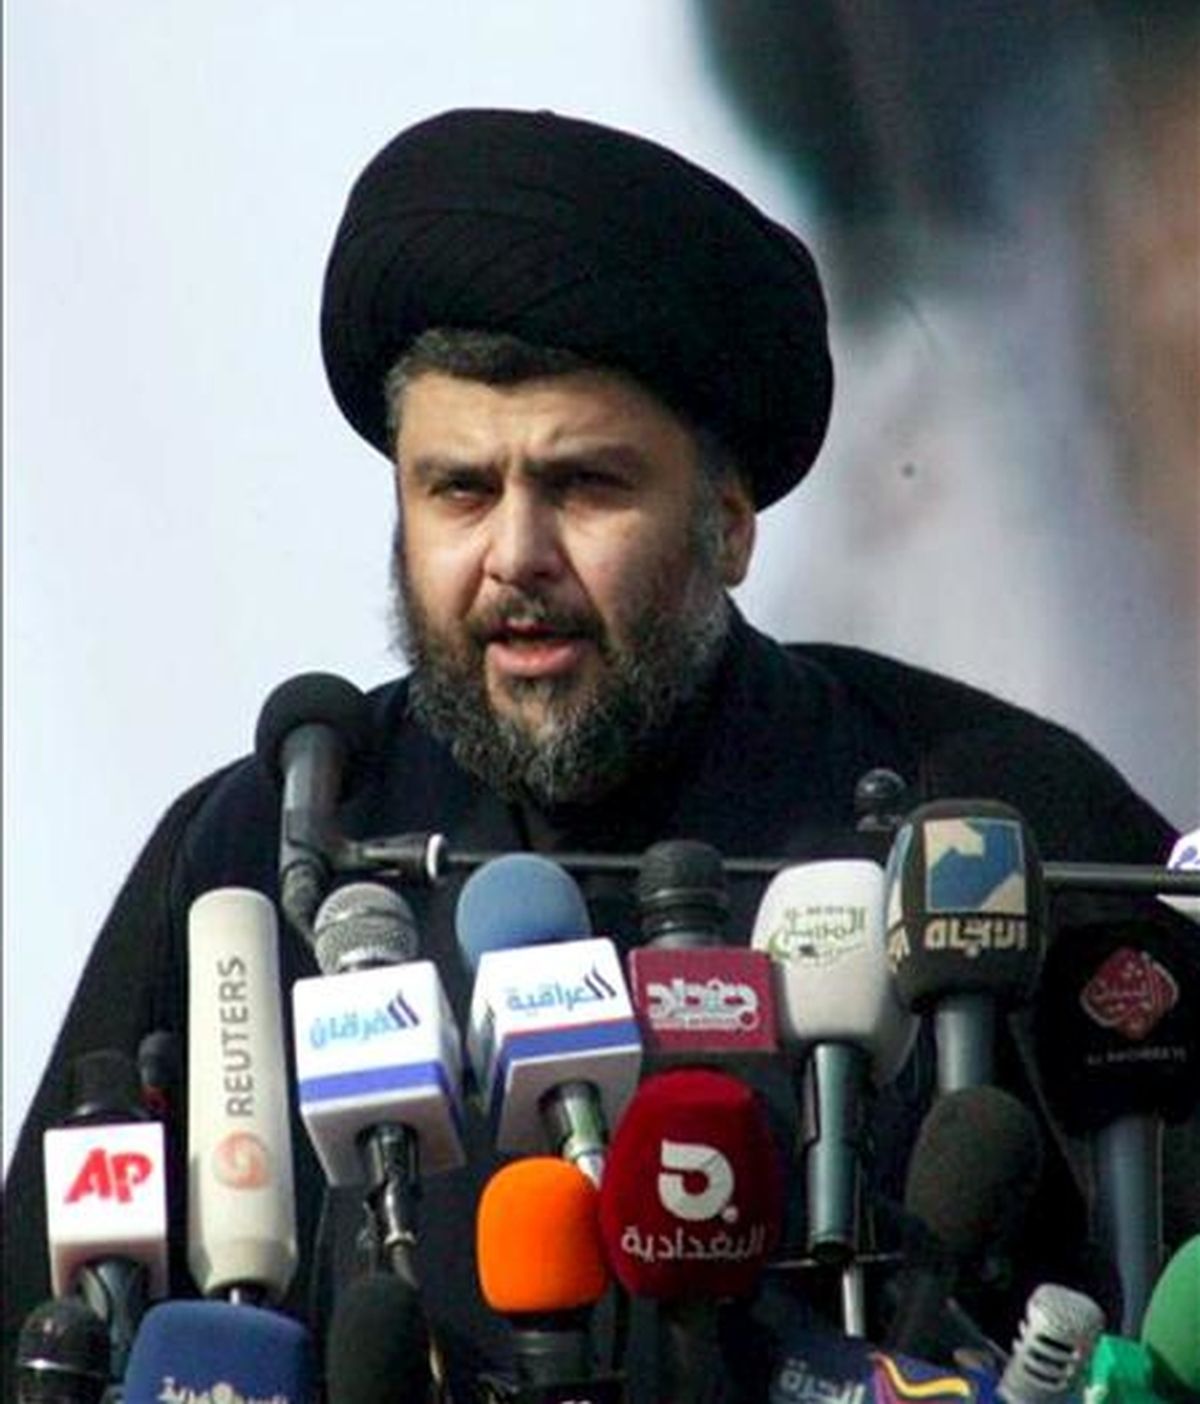 El influyente clérigo radical chií Muqtada al Sadr ofrece un discruso a sus seguidores durante una manifestación en Nayaf (Irak) hoy, 8 de enero de 2011. Sadr instó hoy al Gobierno iraquí a "buscar la salida del ocupante" en su primer discurso tras su regreso hace tres días a Irak después de más de tres años de exilio voluntario en Irán. EFE